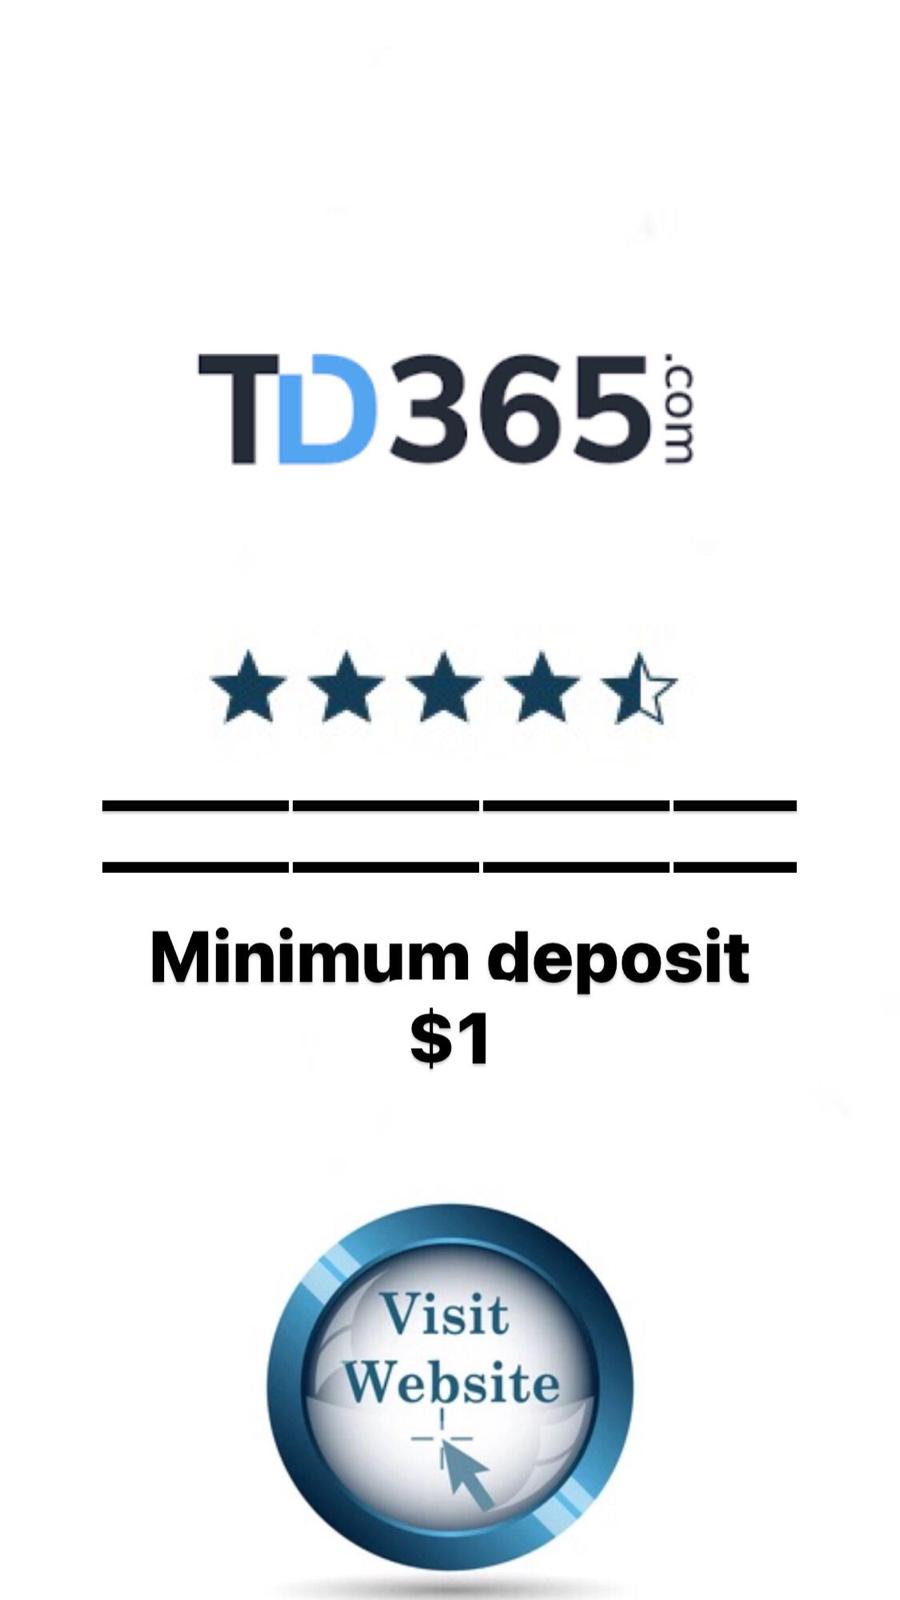 TD365